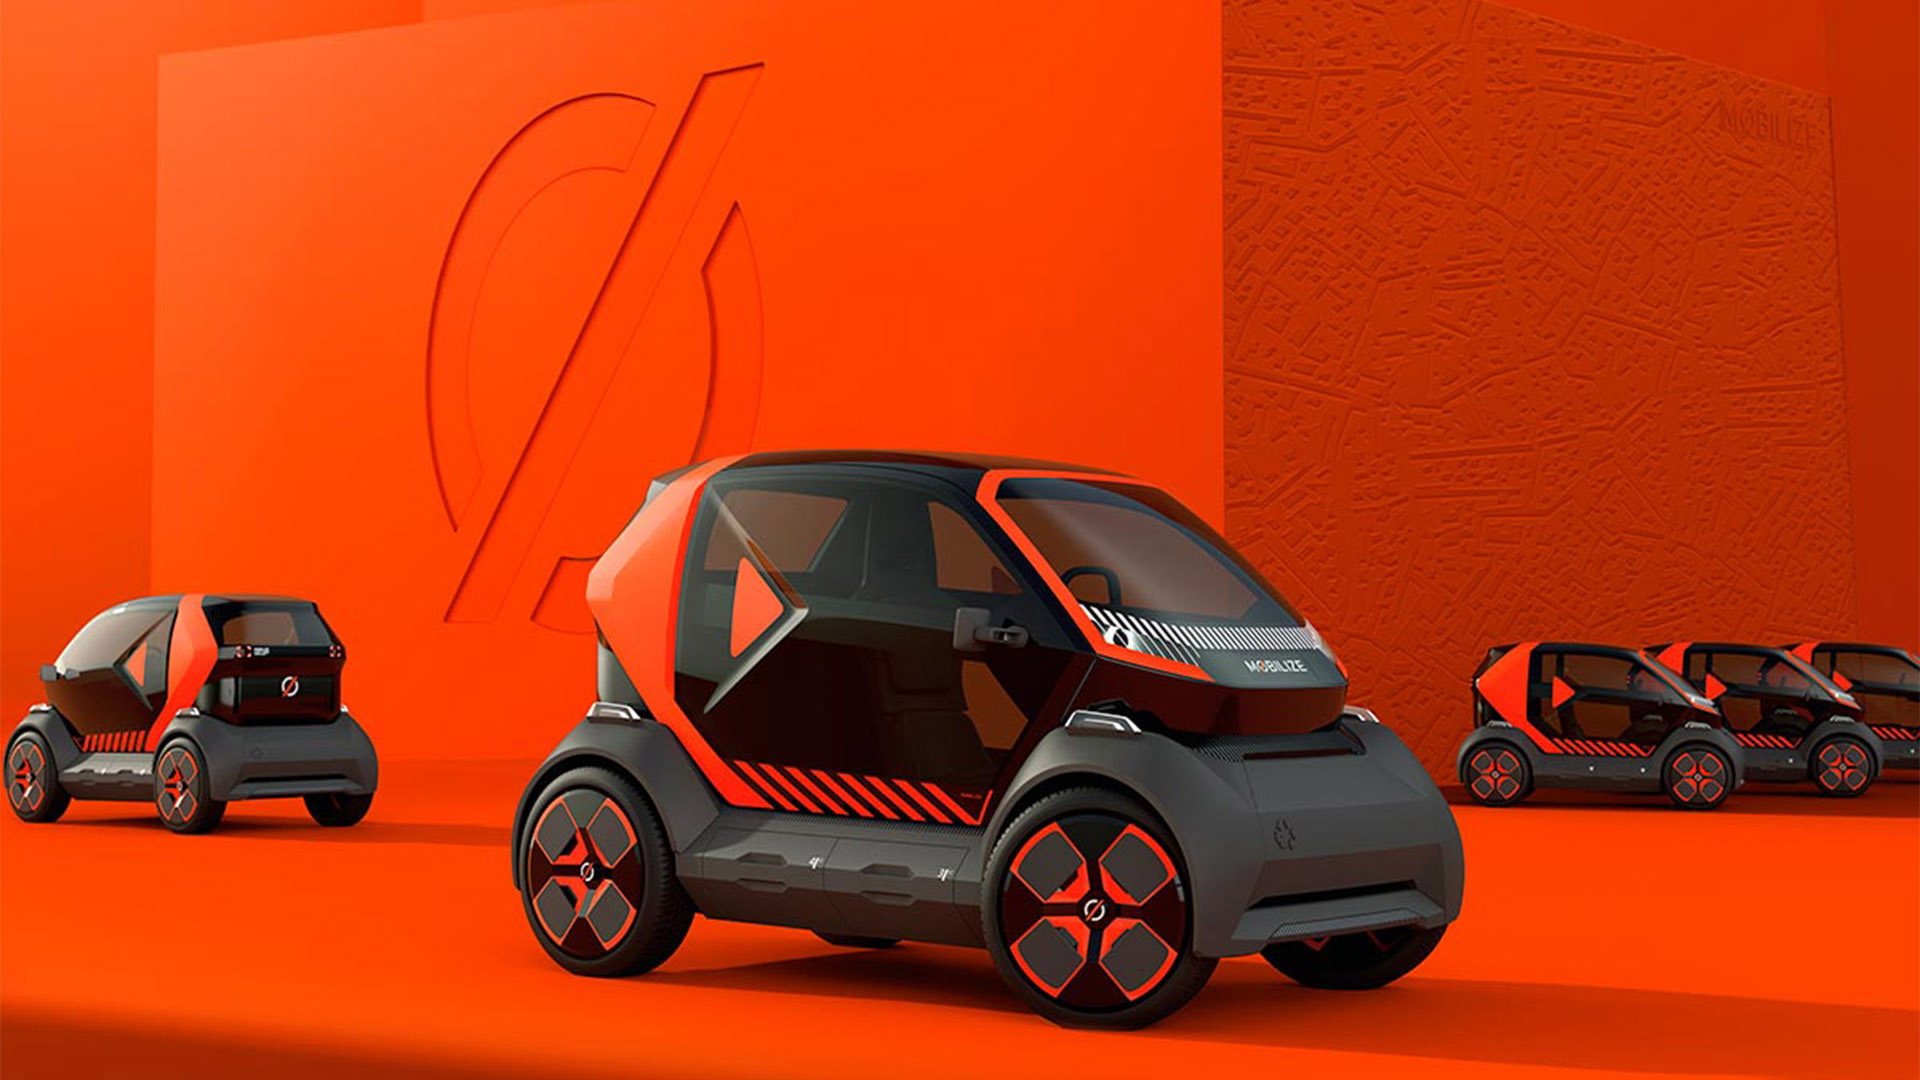 El Mobilize EZ-1 es un concepto de auto urbano desarrollado por Renault que no carga las baterías, sino las reemplaza por módulos en pocos minutos